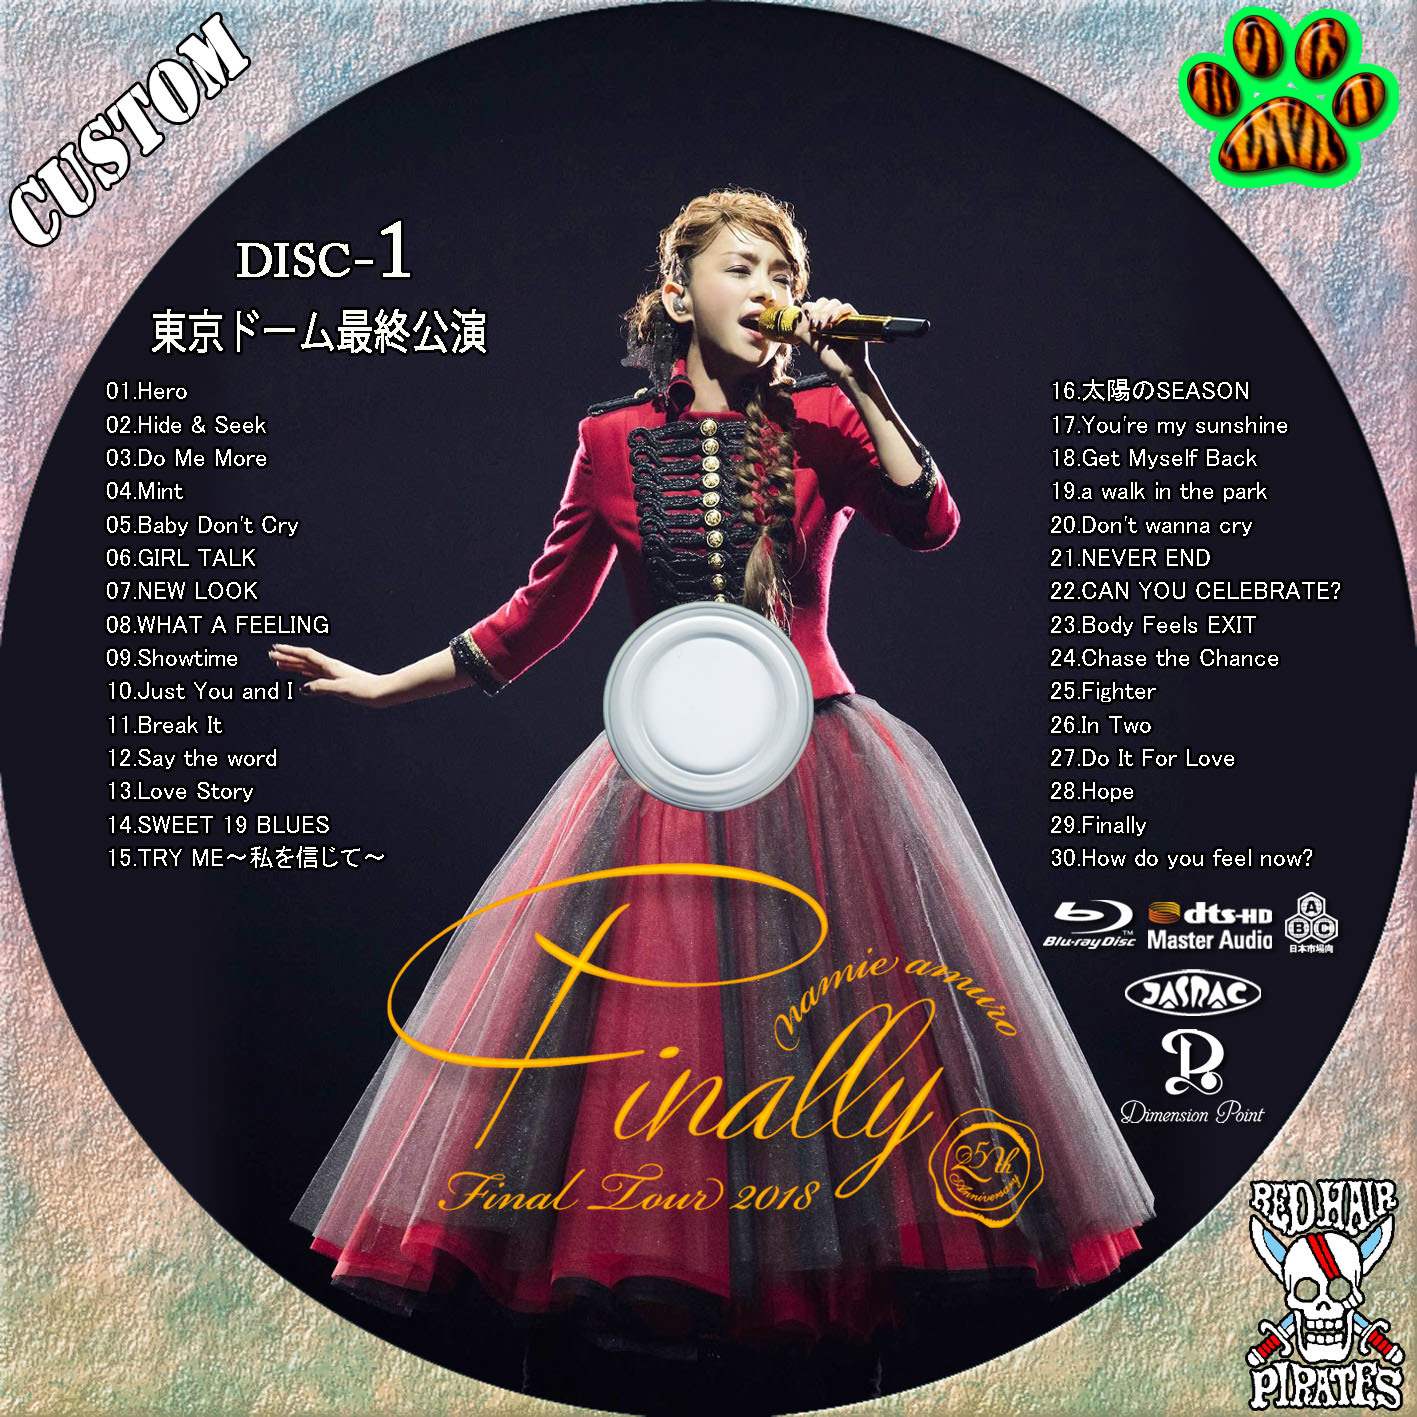 安室奈美恵 Final Tour 2018 DVD + blu-ray www.krzysztofbialy.com